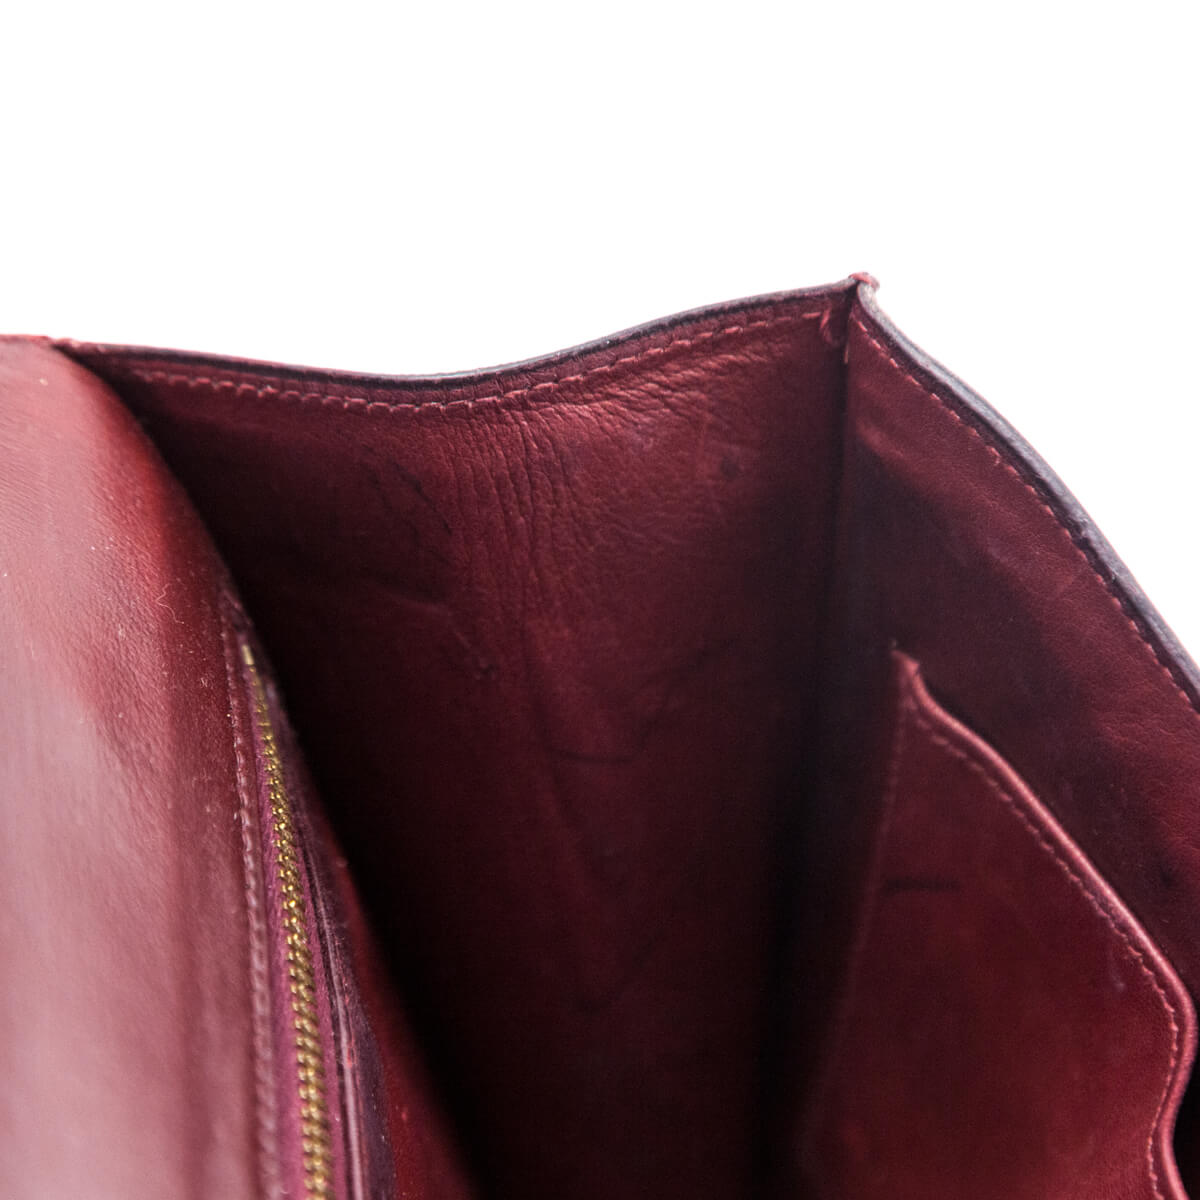 67174 auth HERMES Rouge H burgundy Box leather CONSTANCE 23 Shoulder Bag  VINTAGE